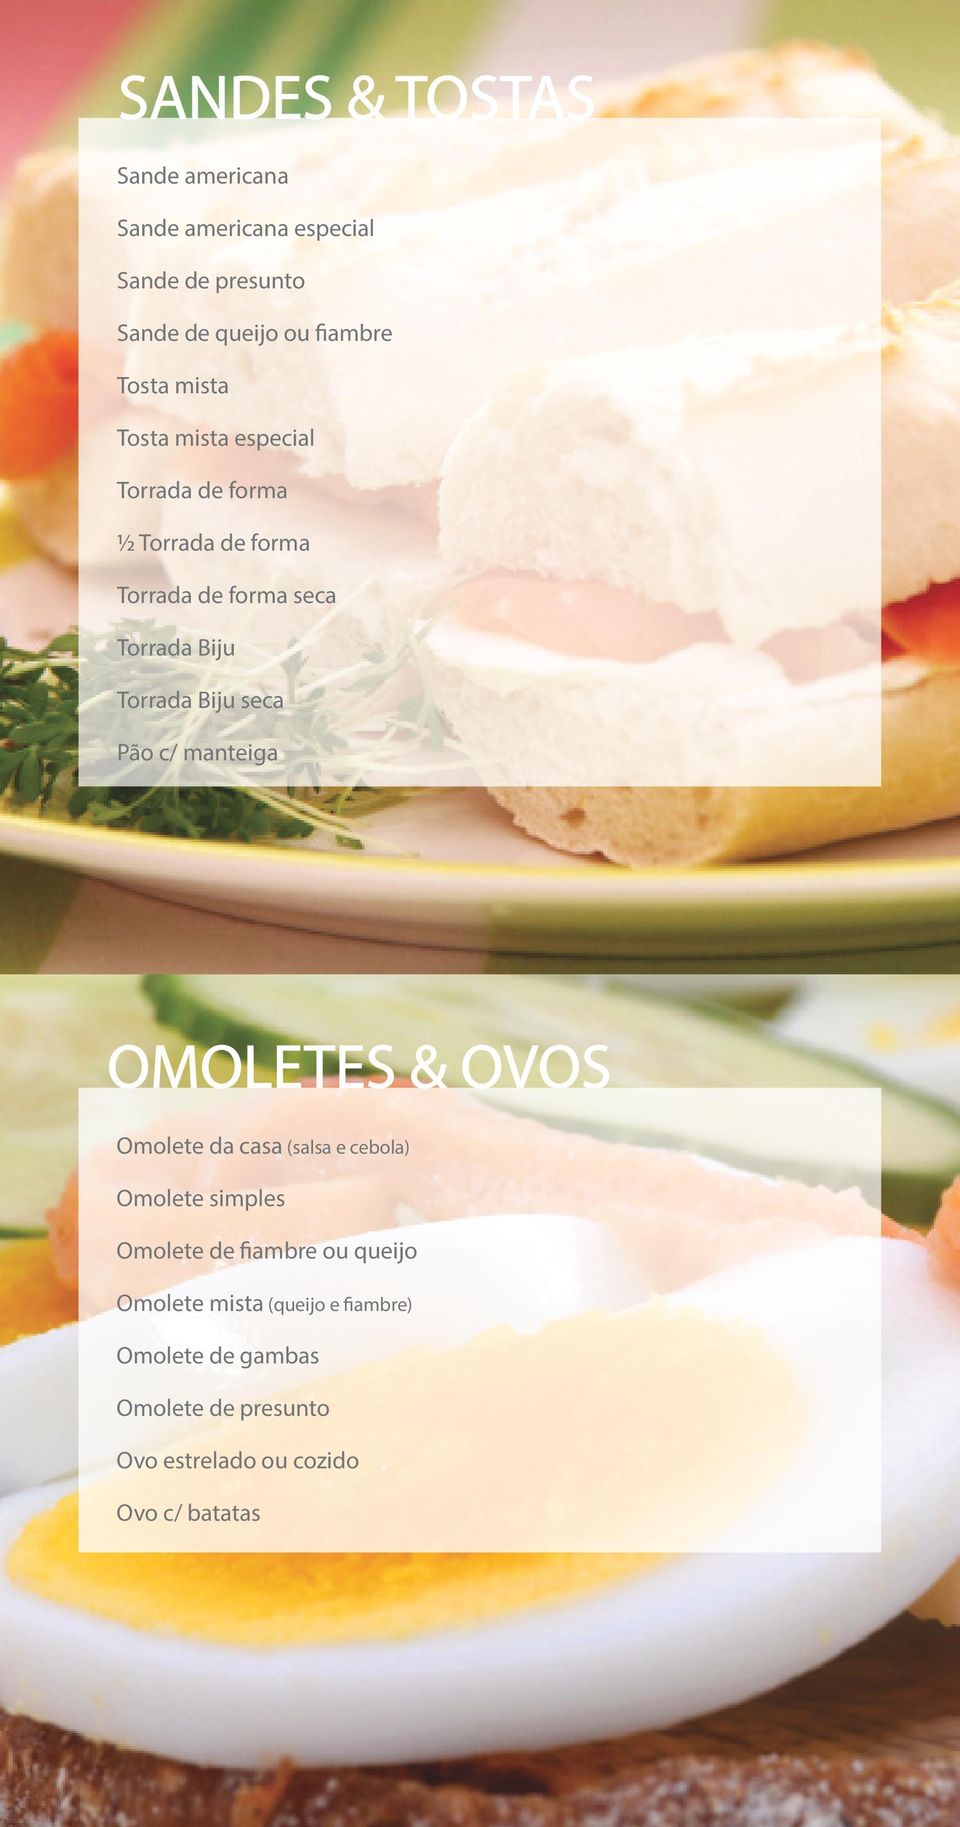 OMOLETES & OVOS Omolete da casa (salsa e cebola) Omolete simples Omolete de fiambre ou queijo Omolete mista (queijo e